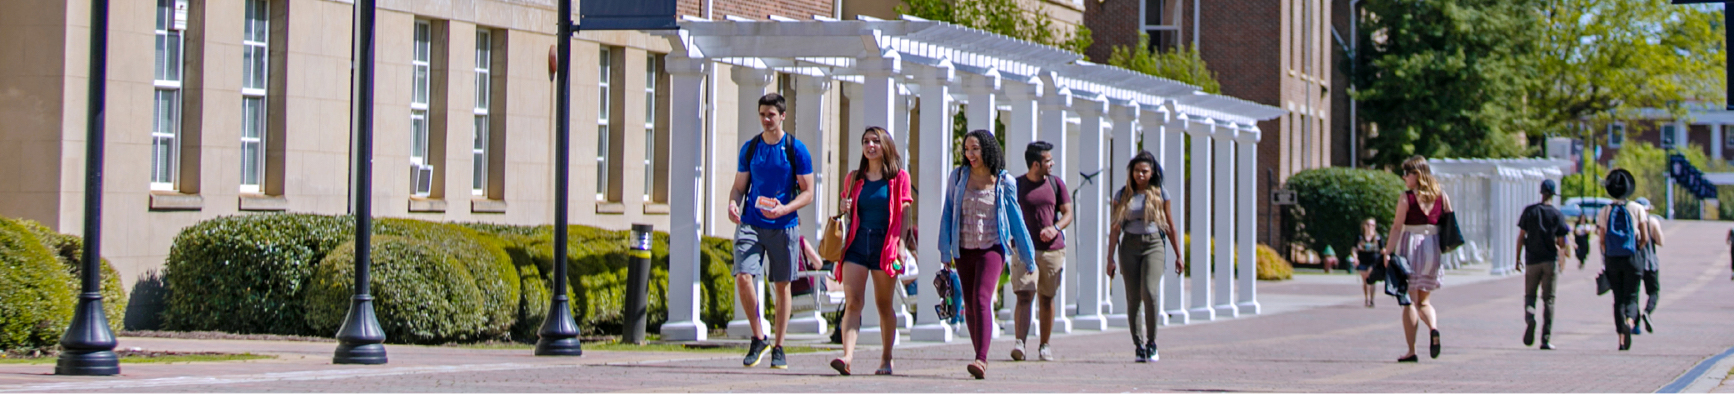 Winthrop University - Scholars Walk